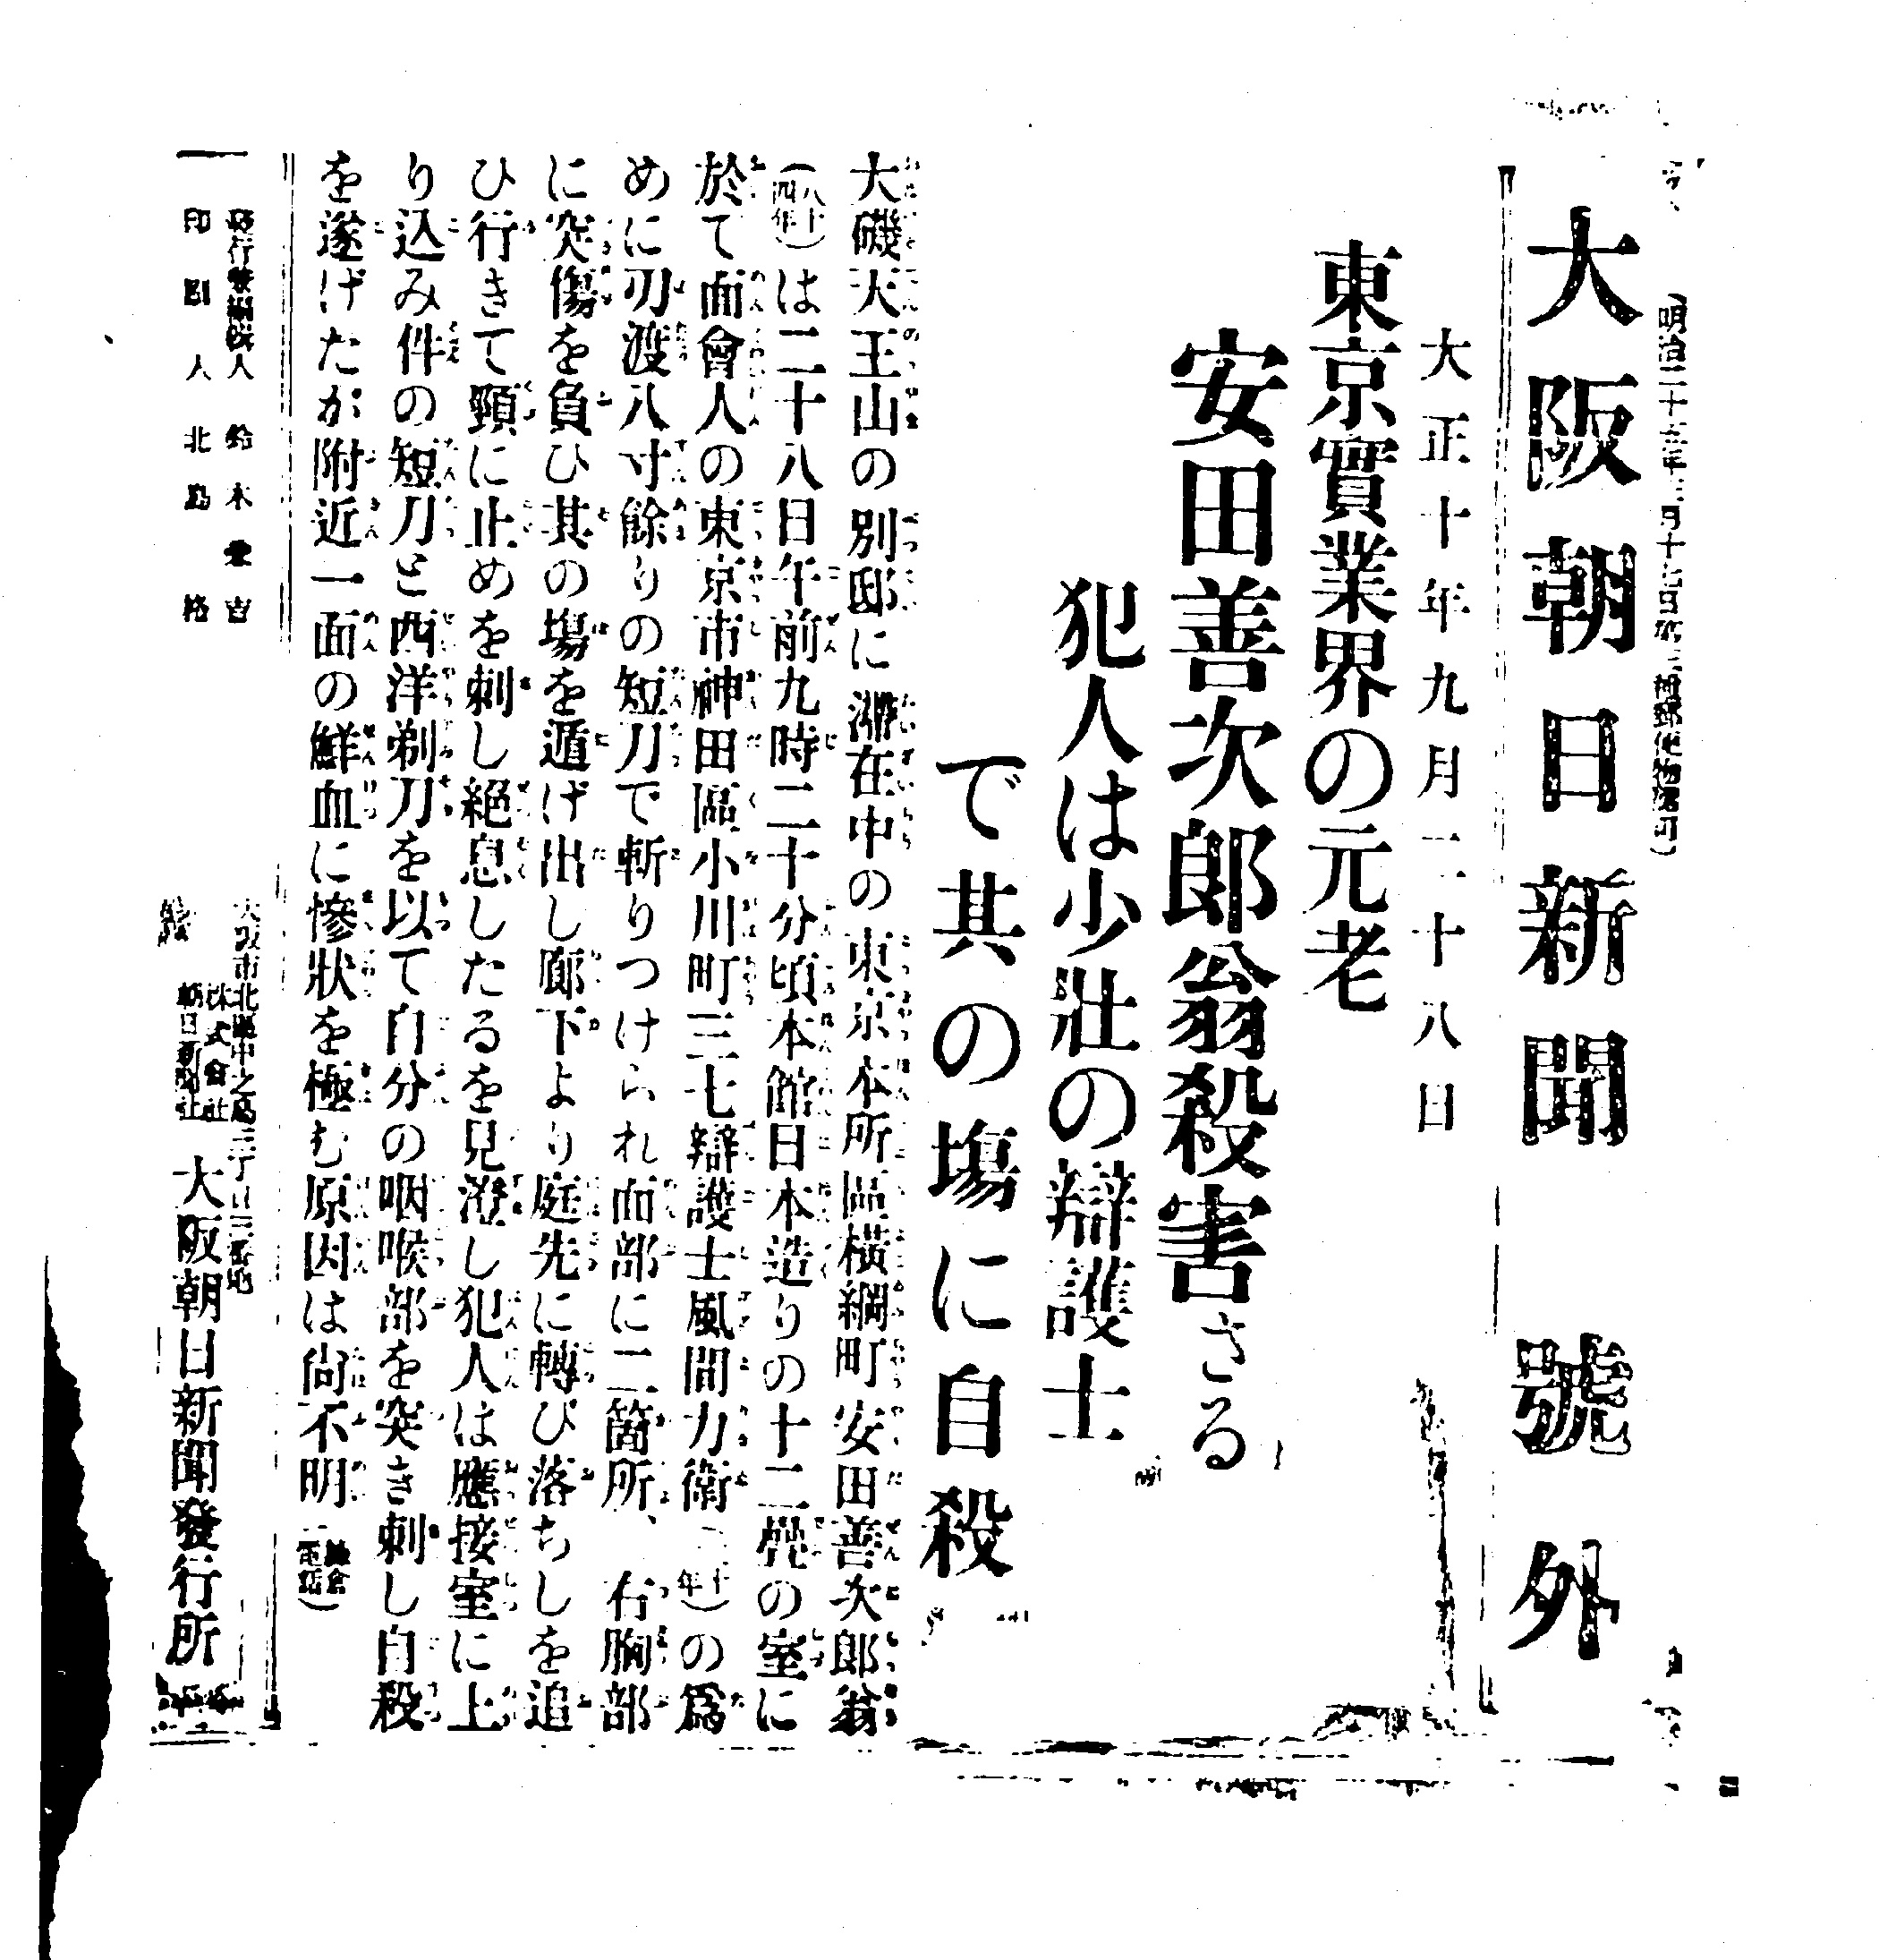 朝日新聞社の歴史（番外編④） テロの連鎖、重なる大正と令和 #1105